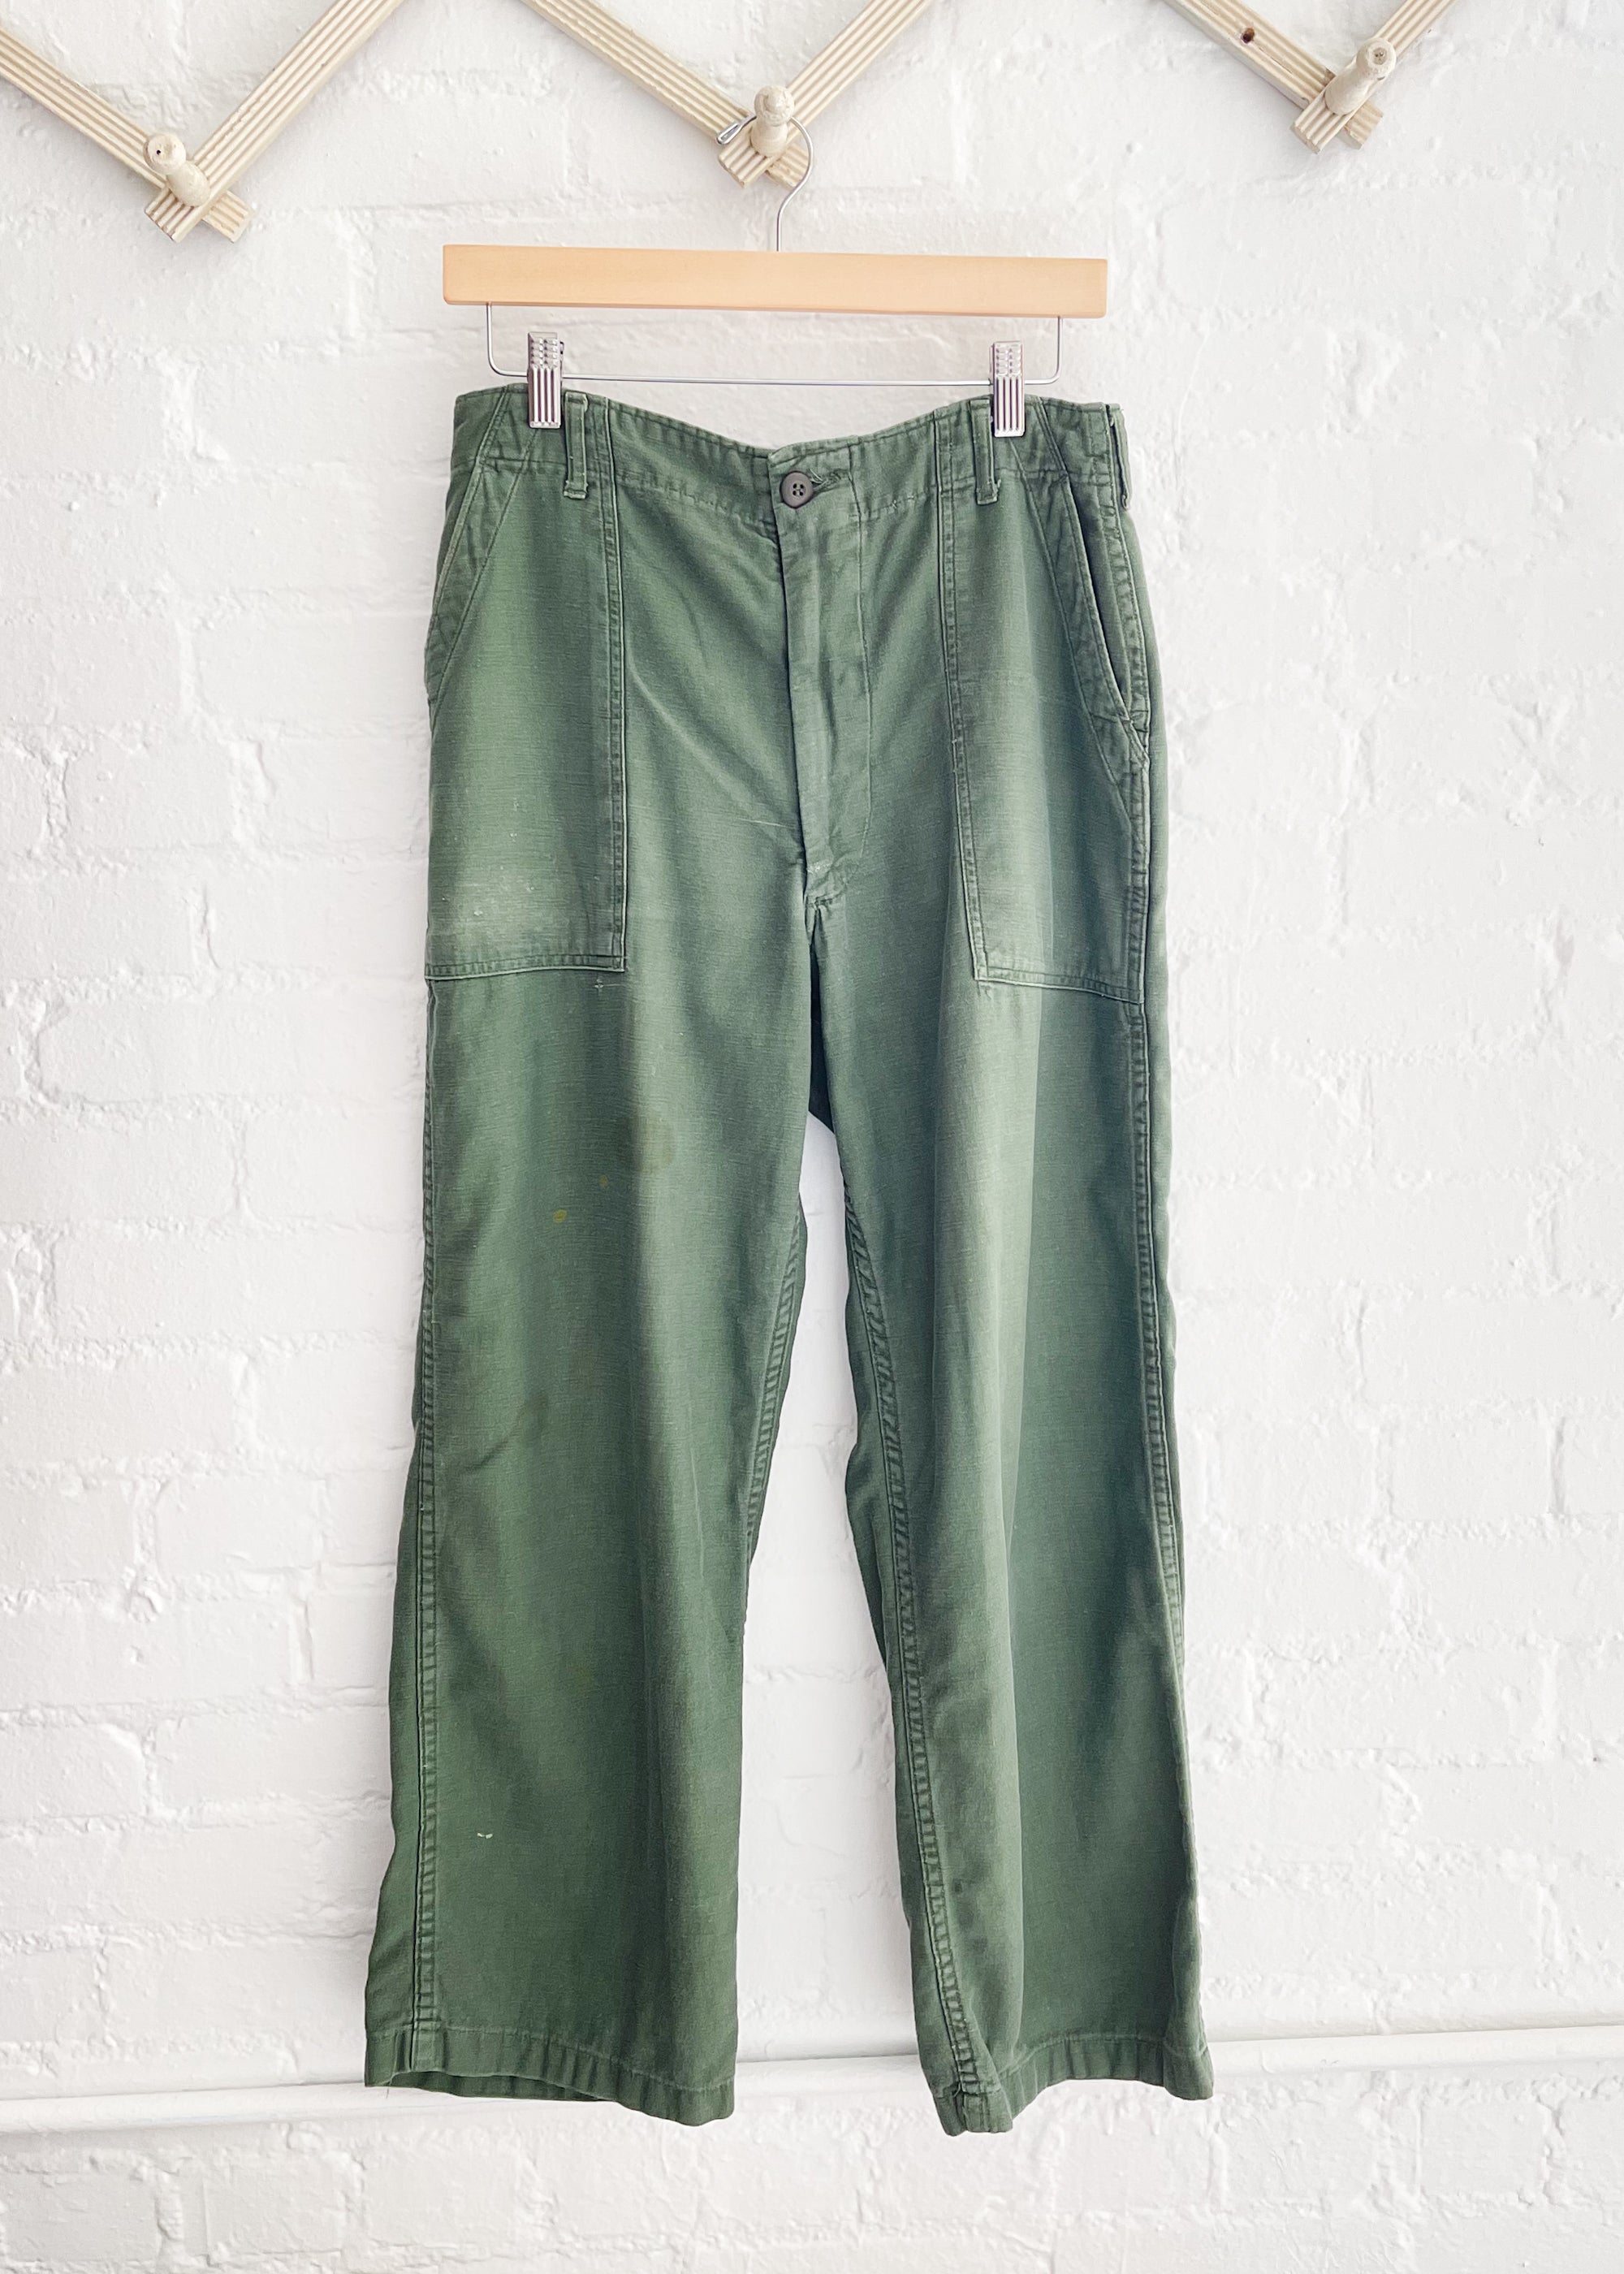 Vintage 1970s Army Pants - Raleigh Vintage